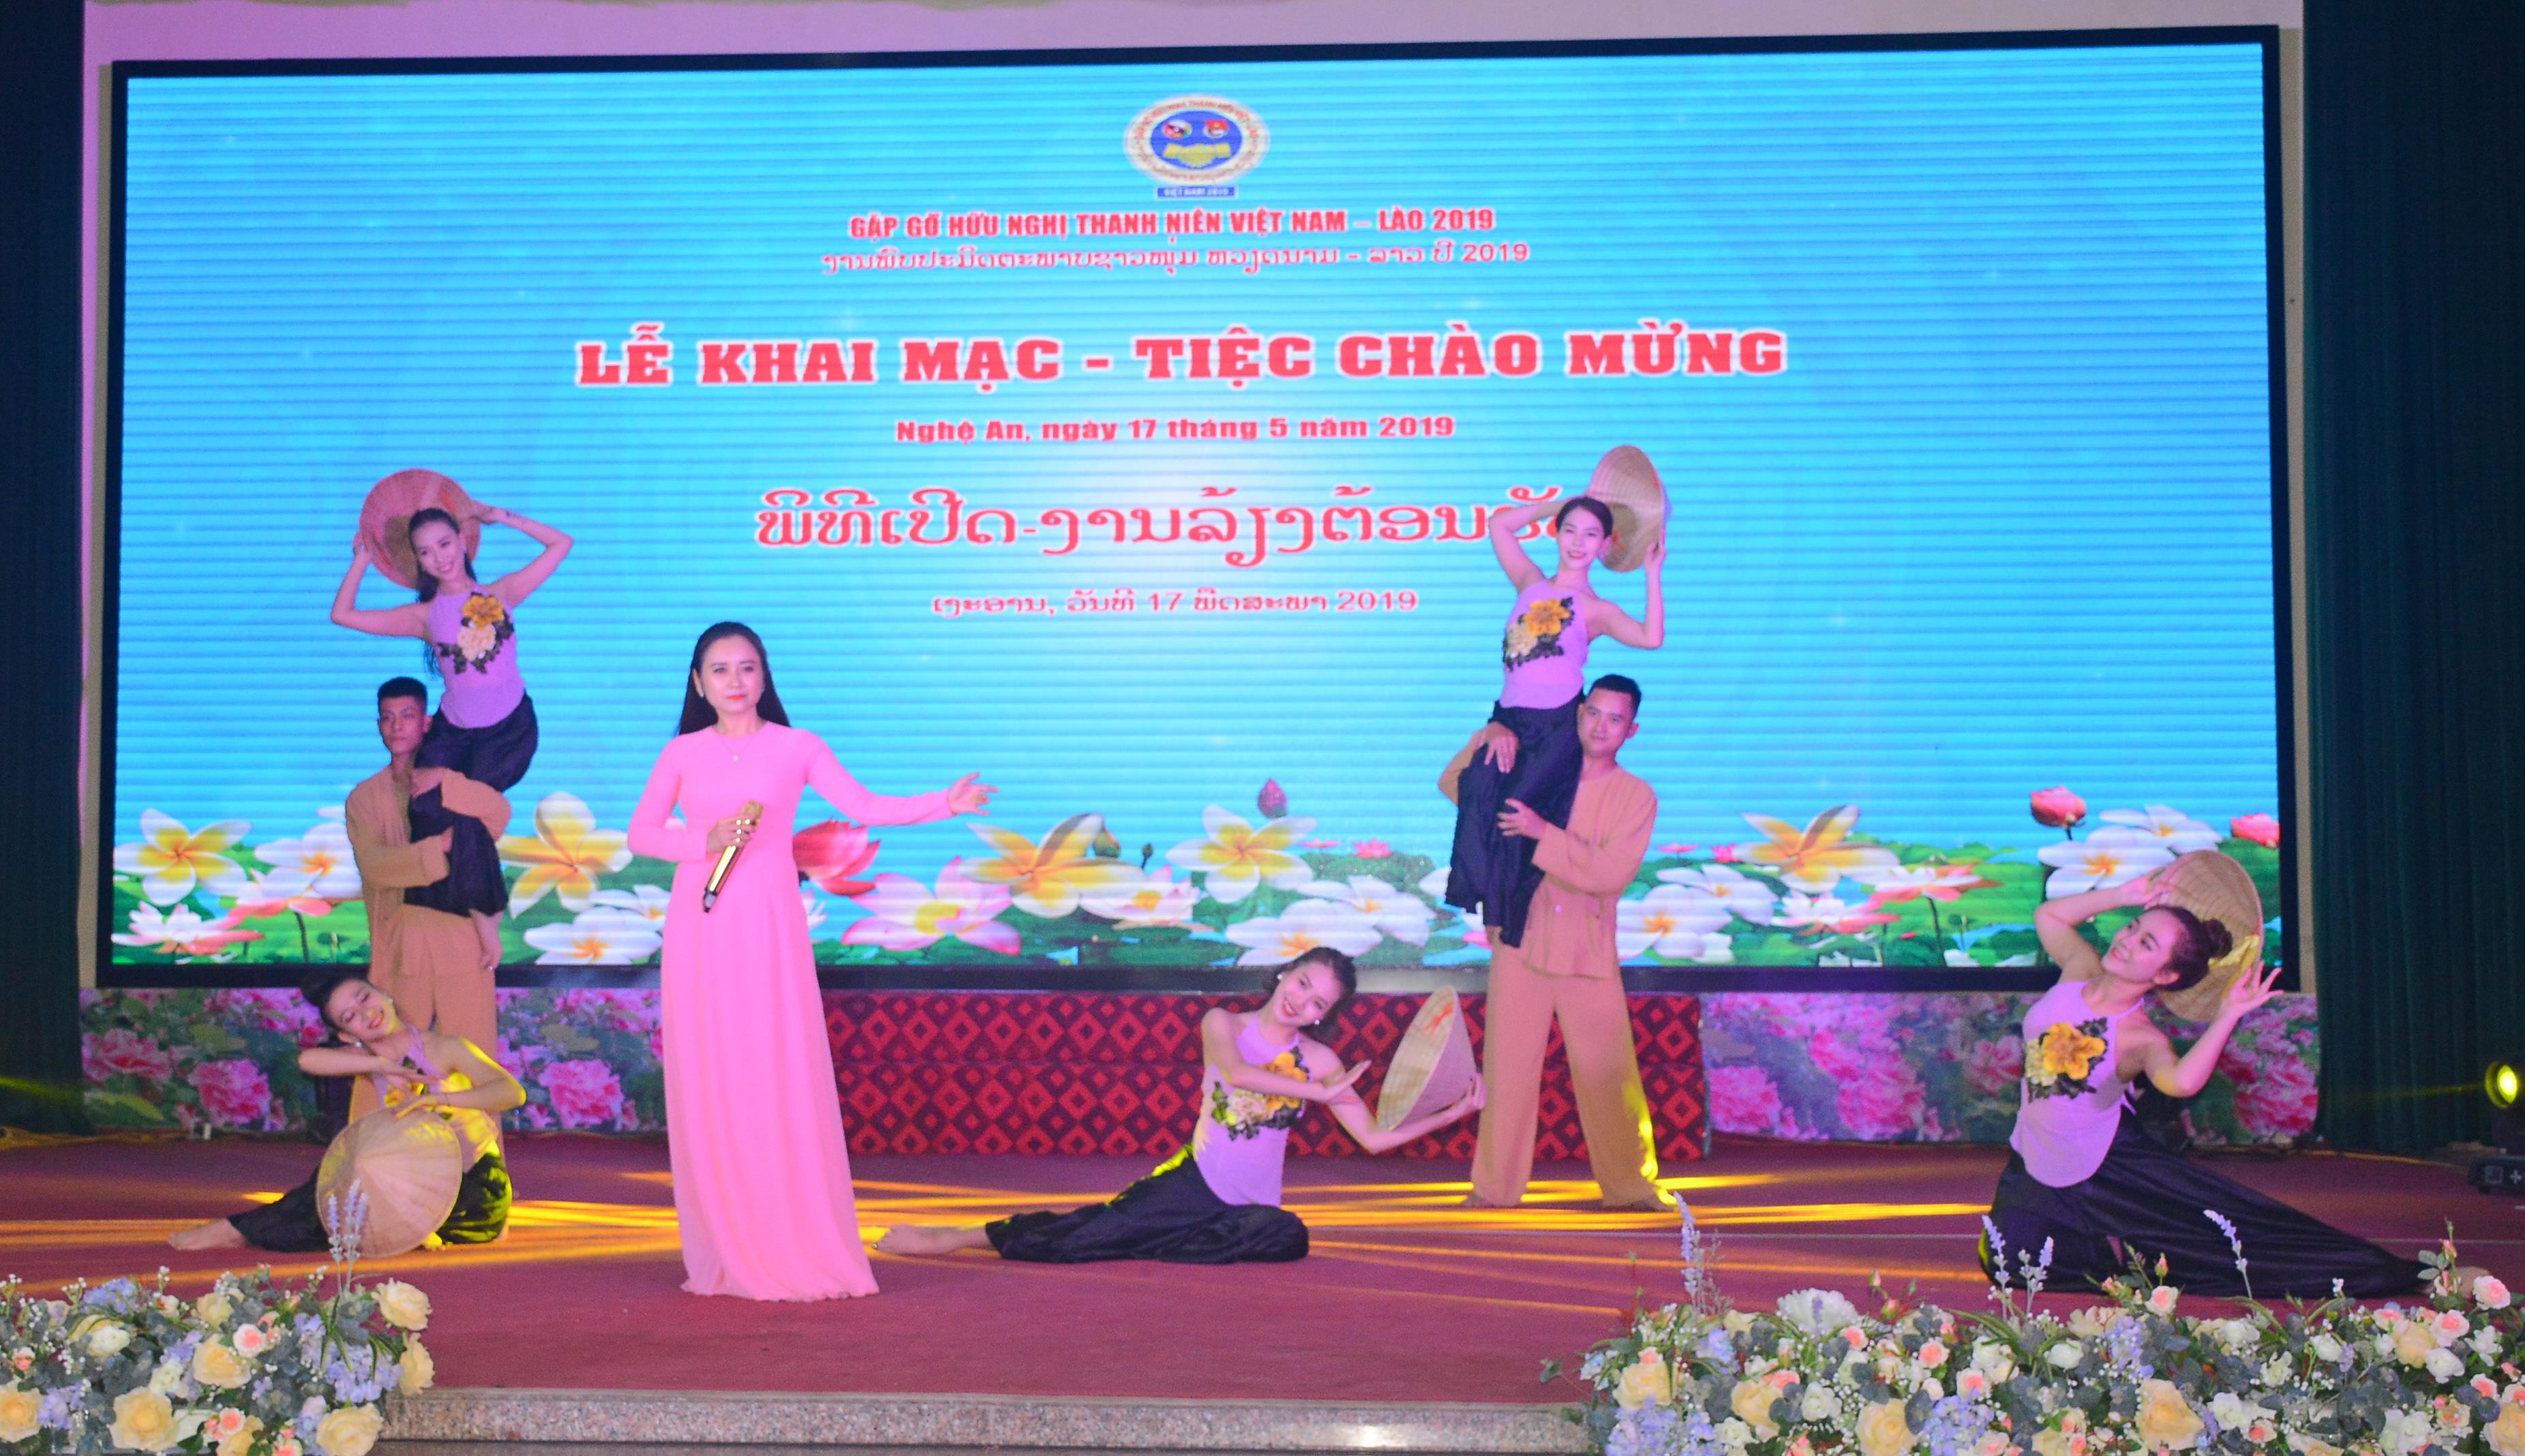 Tiết mục văn nghệ chào mừng lễ khai mạc Gặp gỡ hữu nghị thanh niên Việt Nam - Lào năm 2019. Ảnh: Thu Giang